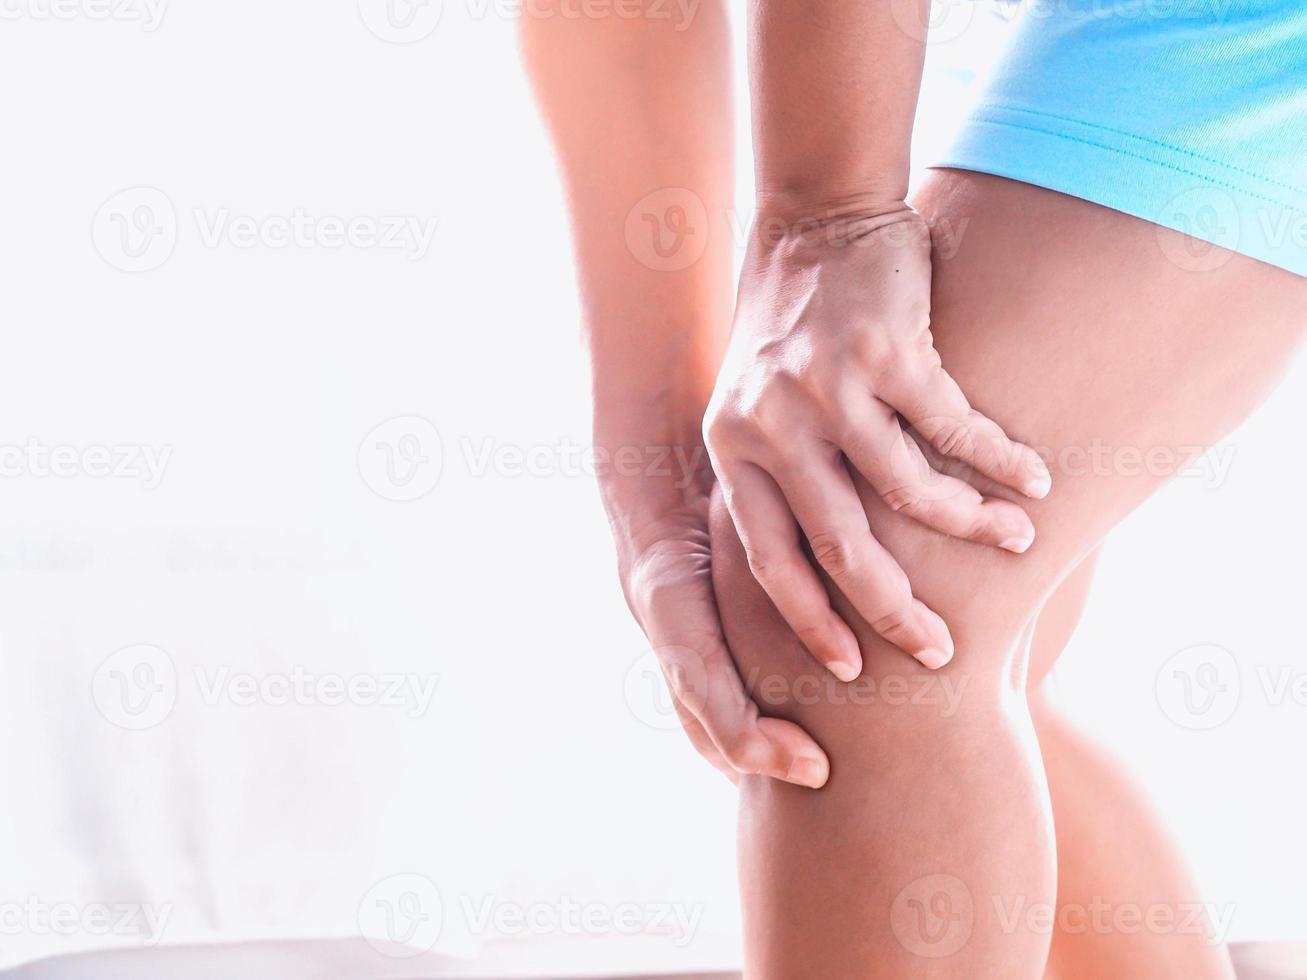 jeunes femmes asiatiques souffrant de douleurs musculaires avec douleurs au genou et aux jambes photo